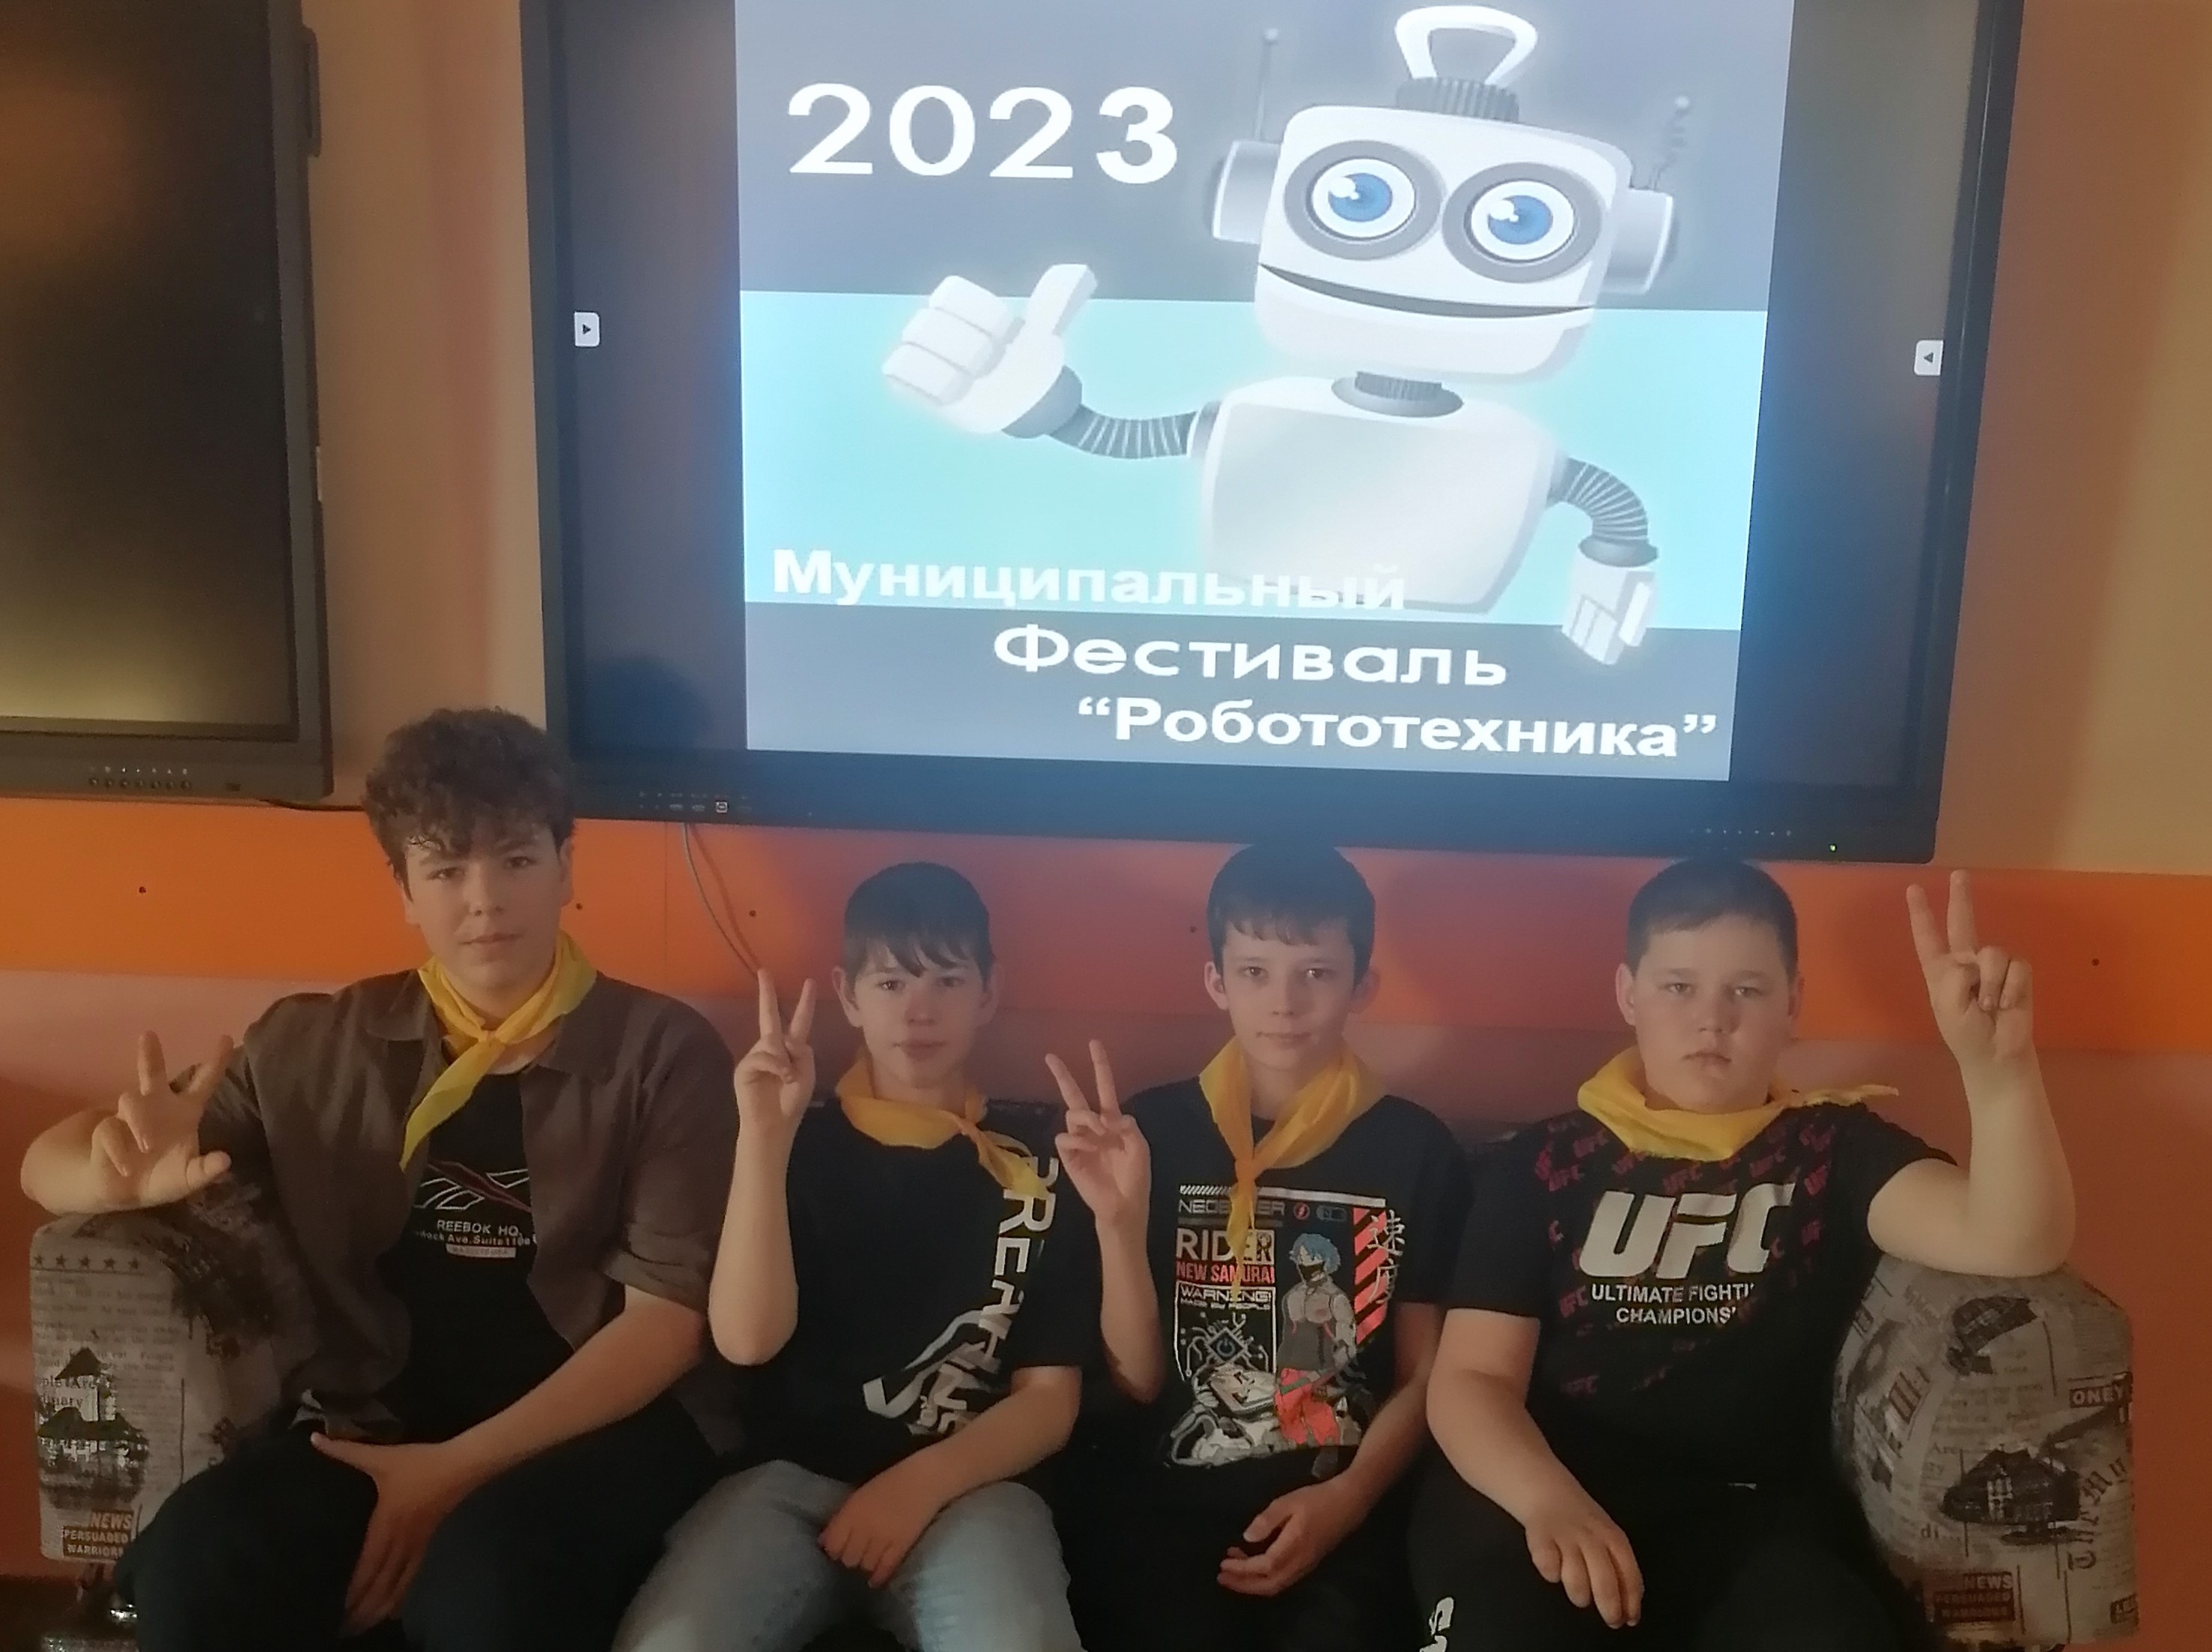 Призёры Муниципального фестиваля Робототехника 23.